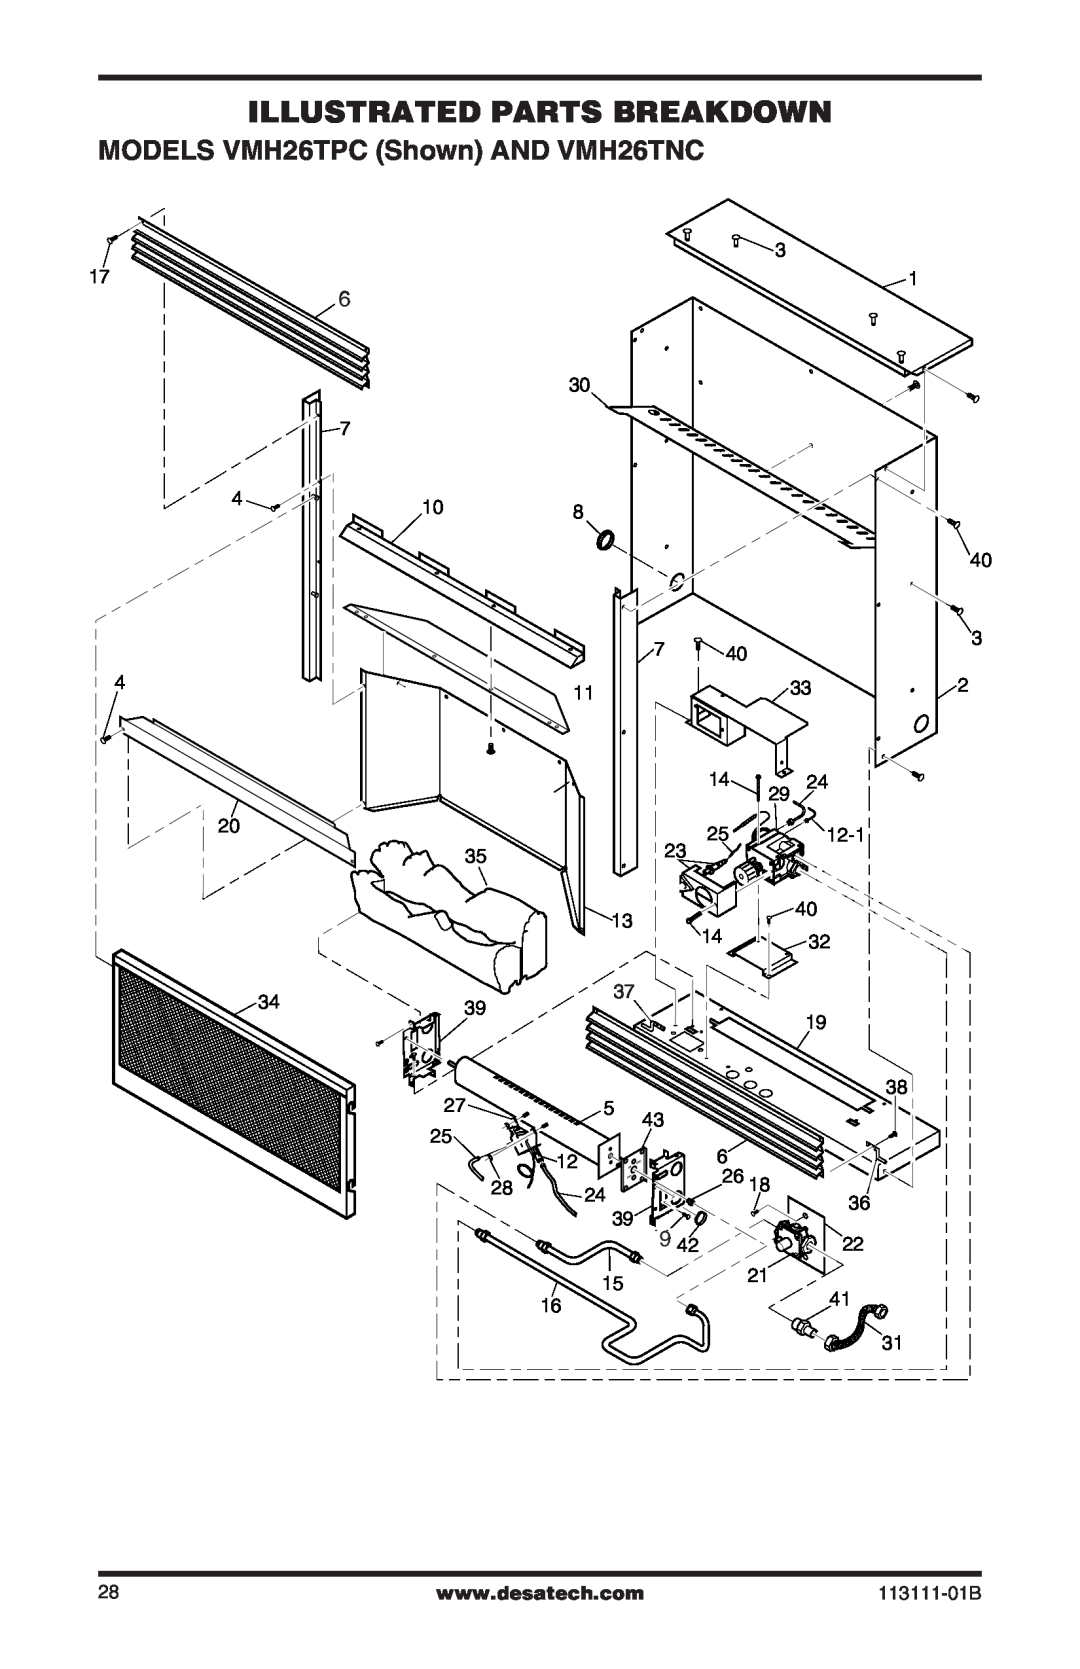 Desa installation manual Illustrated Parts Breakdown, MODELS VMH26TPC Shown AND VMH26TNC 